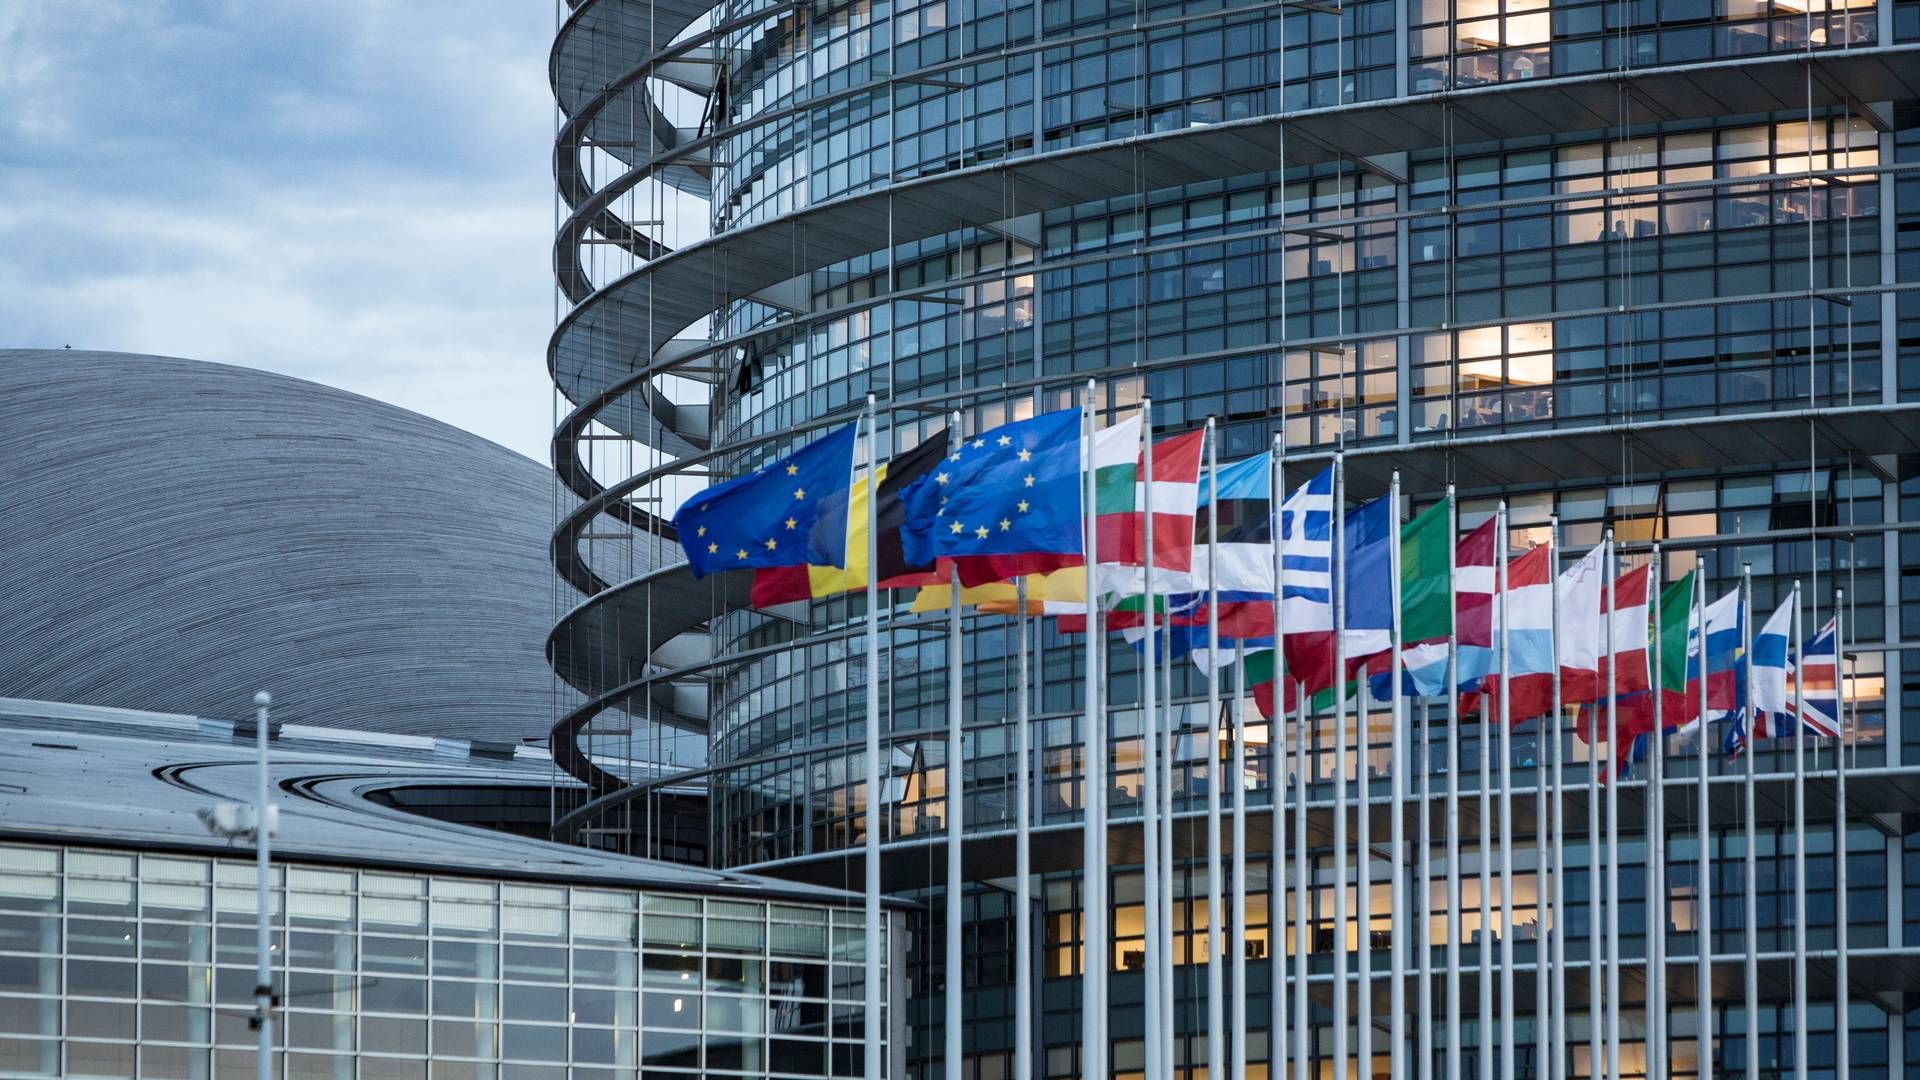 Europa-Parlamentet i Strasbourg har tirsdag eftermiddag dannet scene for flere afstemninger, der skal sikre mere genbrug. | Foto: Jens Hartmann